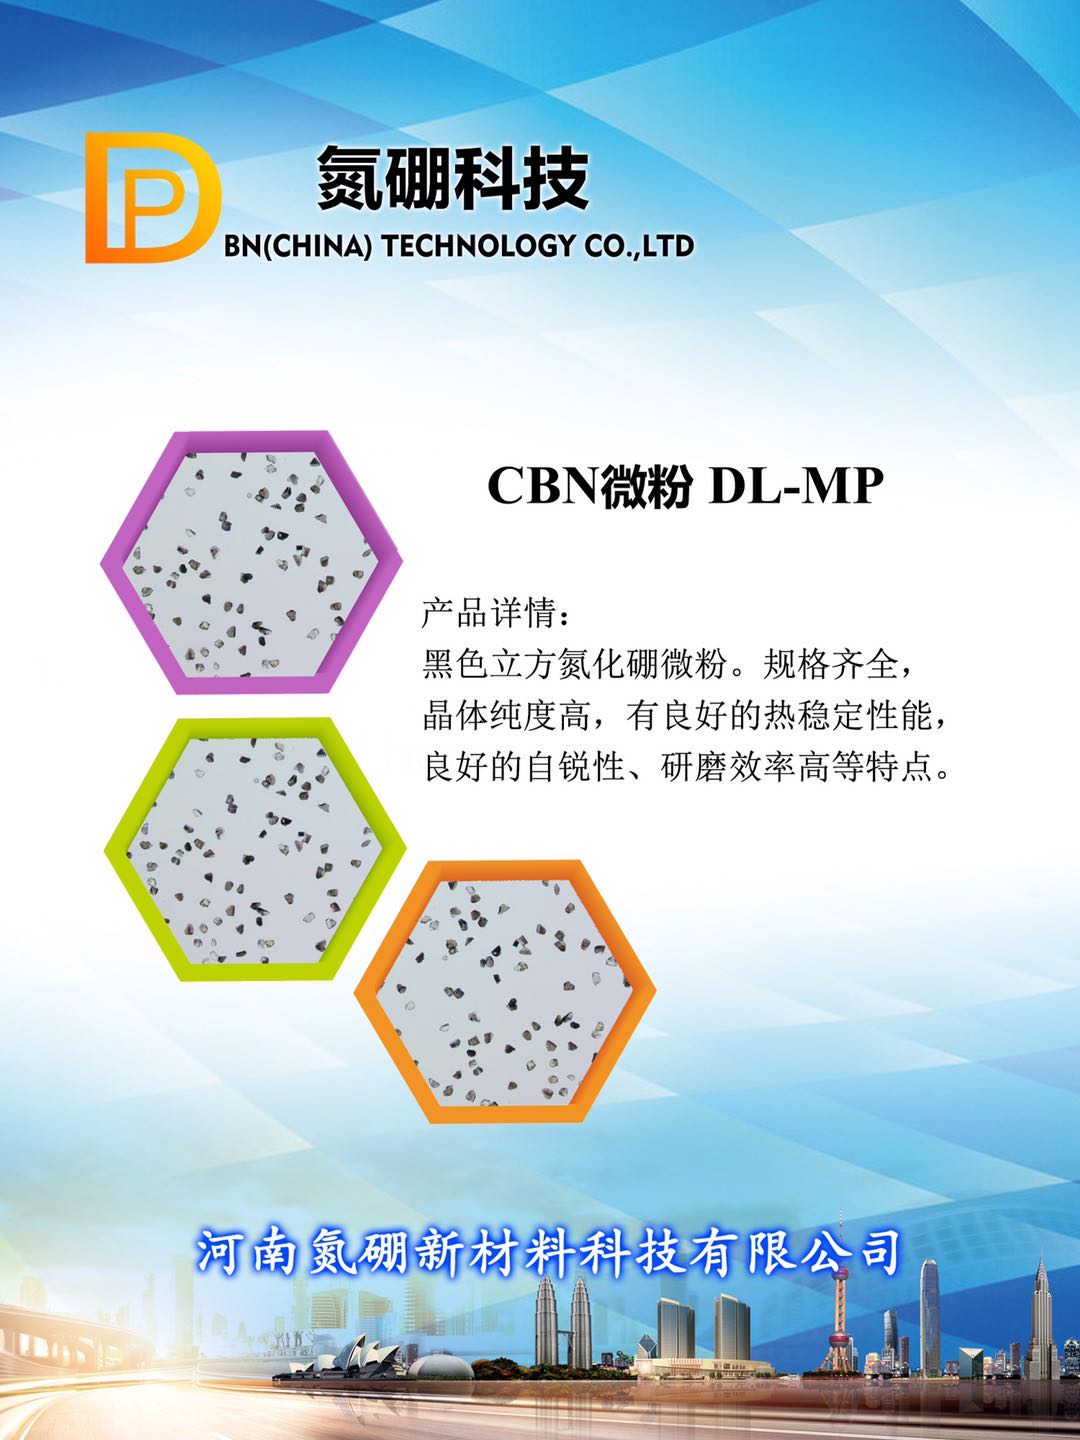 立方氮化硼CBN单晶微粉 加工不同的工件 氮硼科技